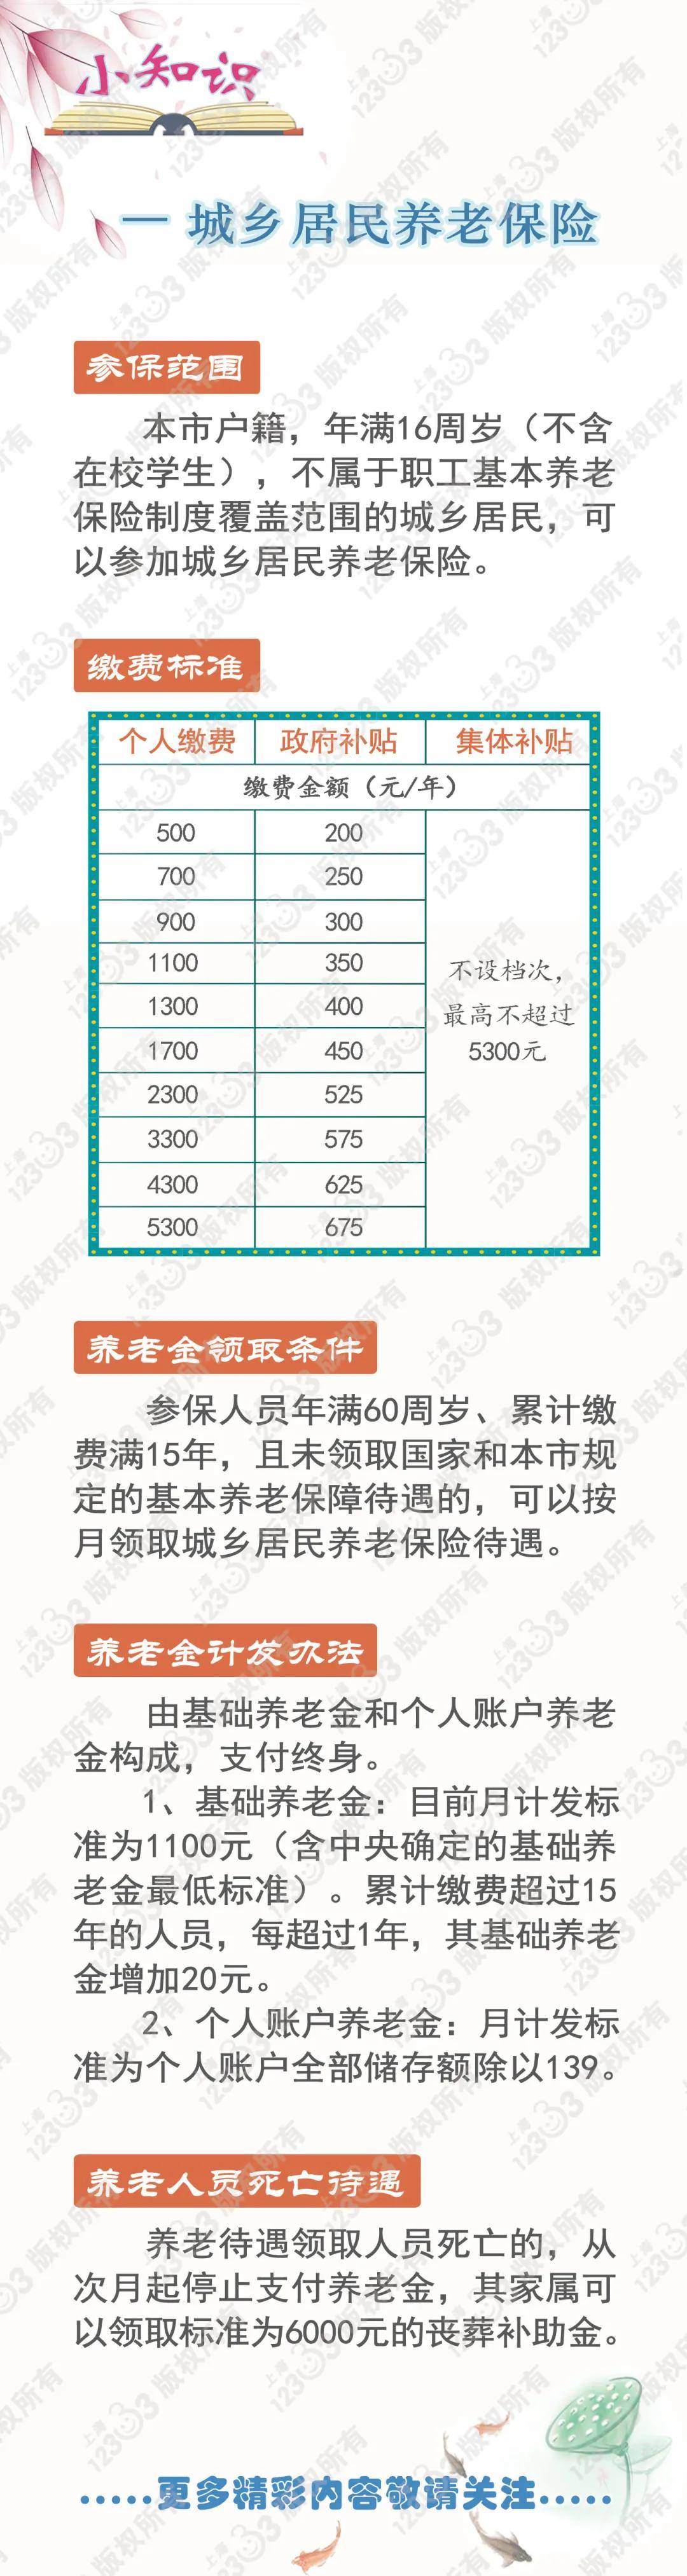 安庆农村养老保险网上缴费流程和报销比例规定